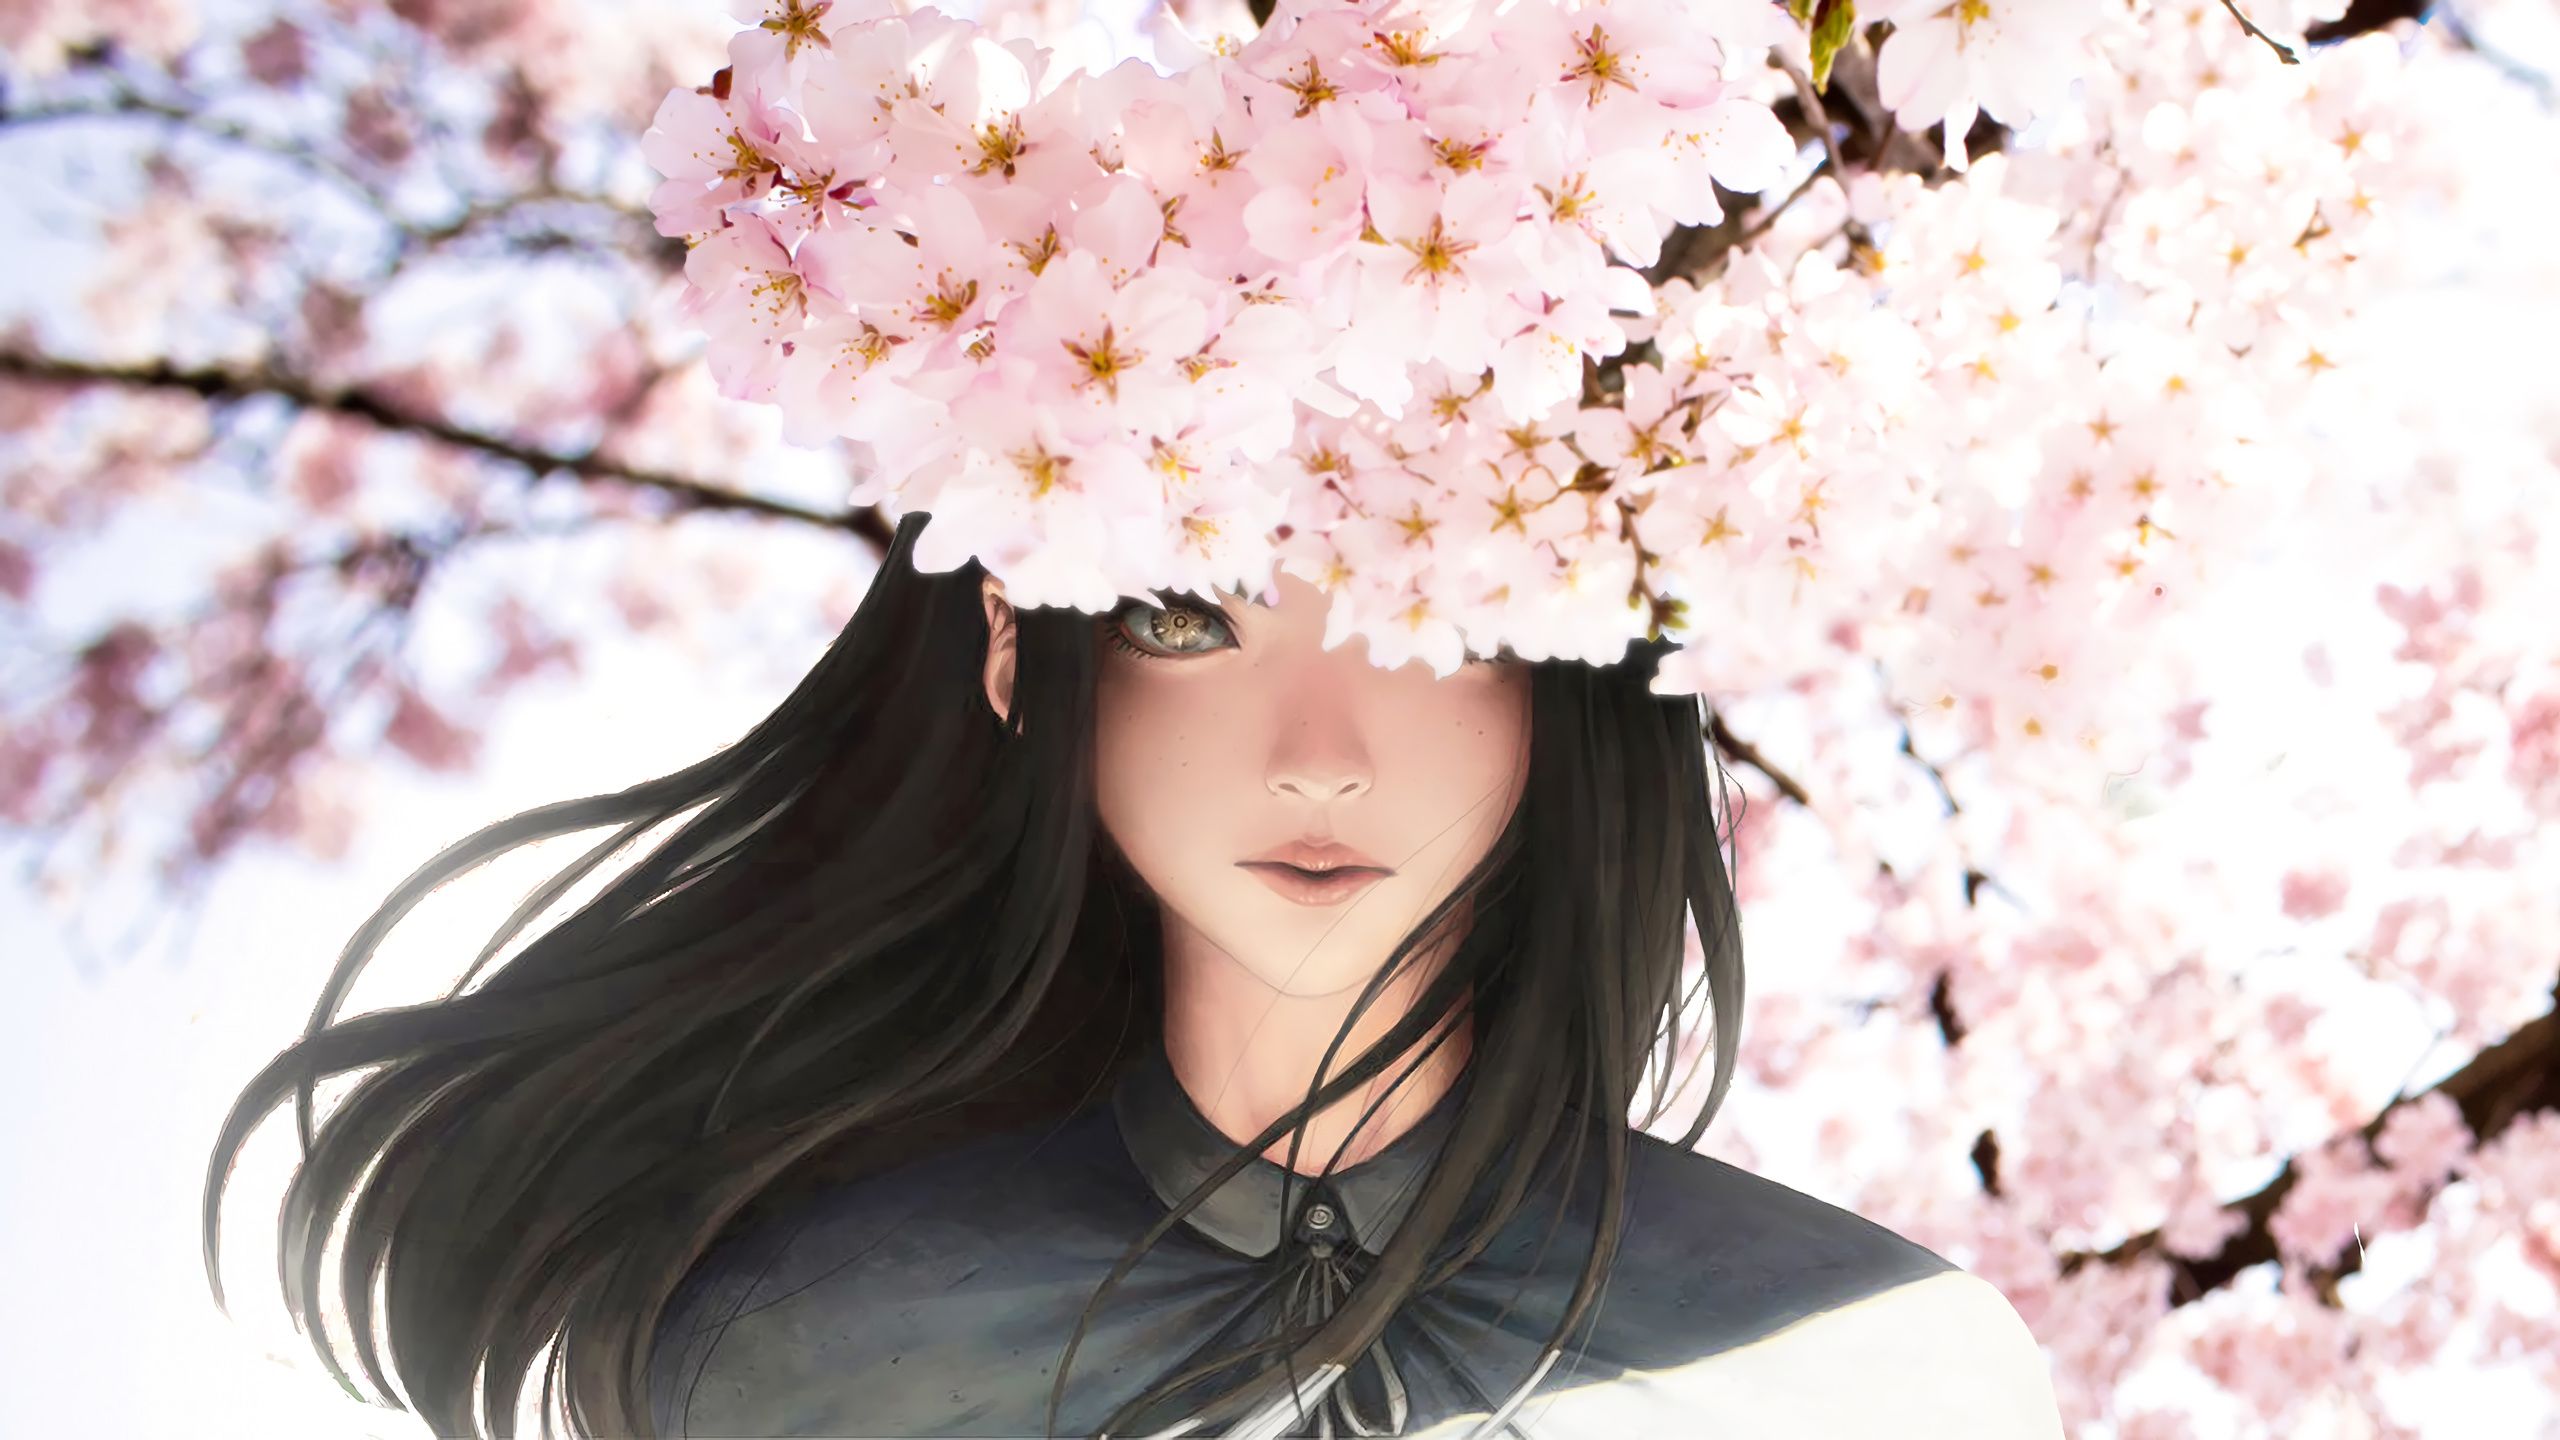 Aesthetic Anime Cherry Blossom, sakura trees aesthetic ps4 HD wallpaper |  Pxfuel